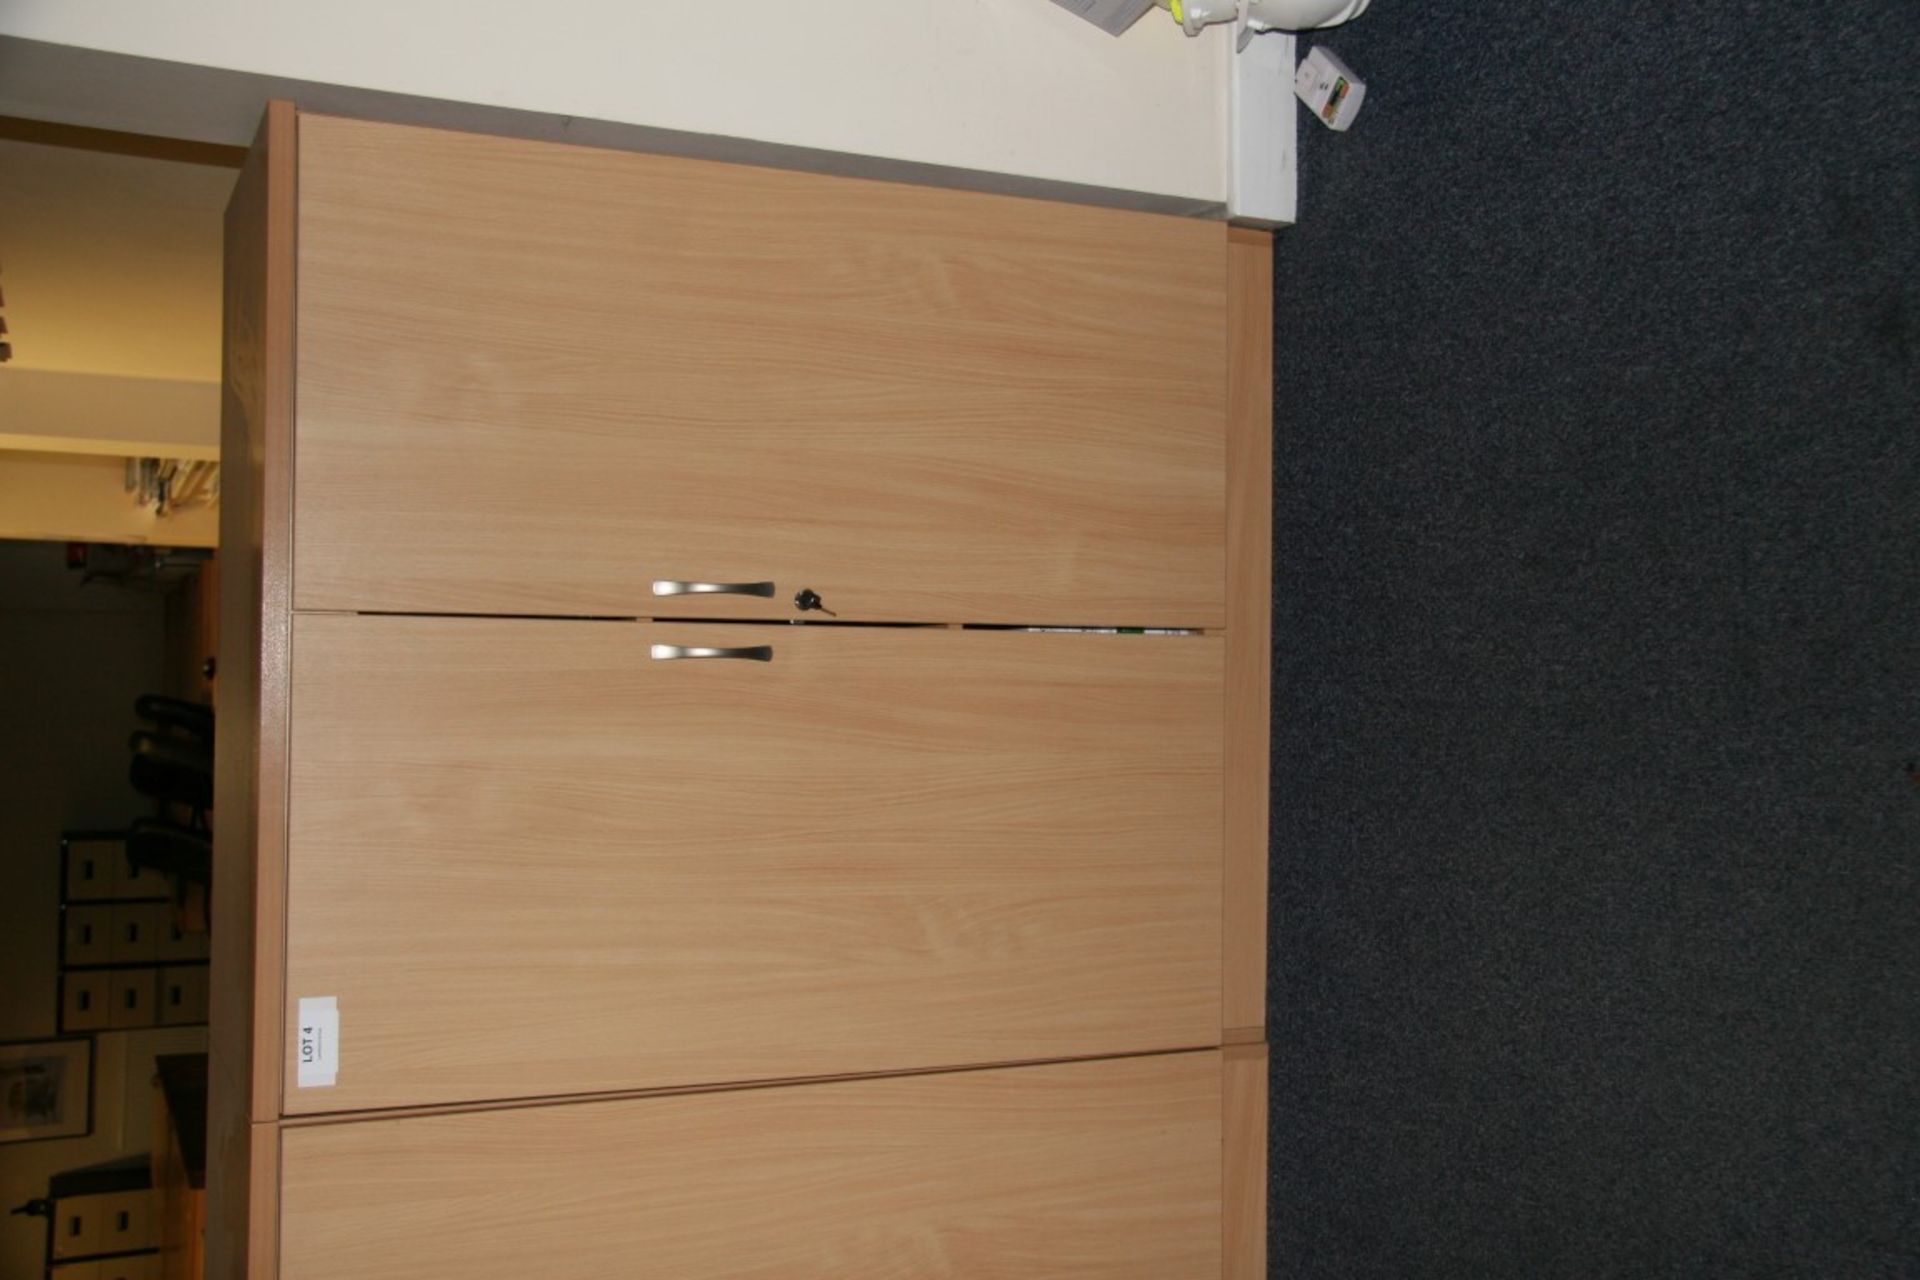 2 x Beech double door cupboards - 1000 (w) x 1200 (h) - Image 2 of 2